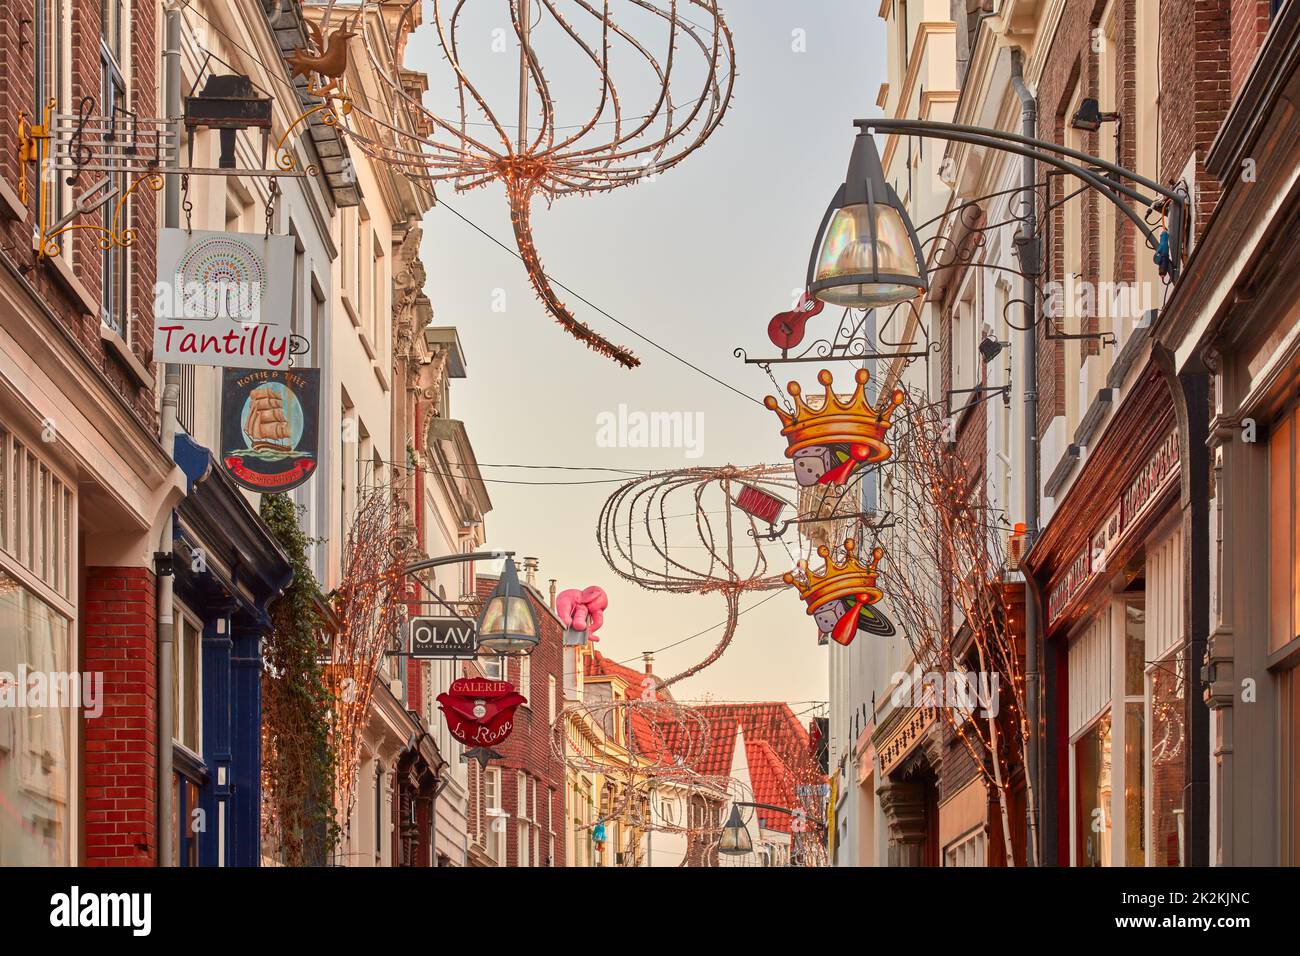 Deventer, Países Bajos - 20 de diciembre de 2021: Calle comercial con decoración navideña en el centro de la ciudad holandesa de Deventer, Holanda Foto de stock